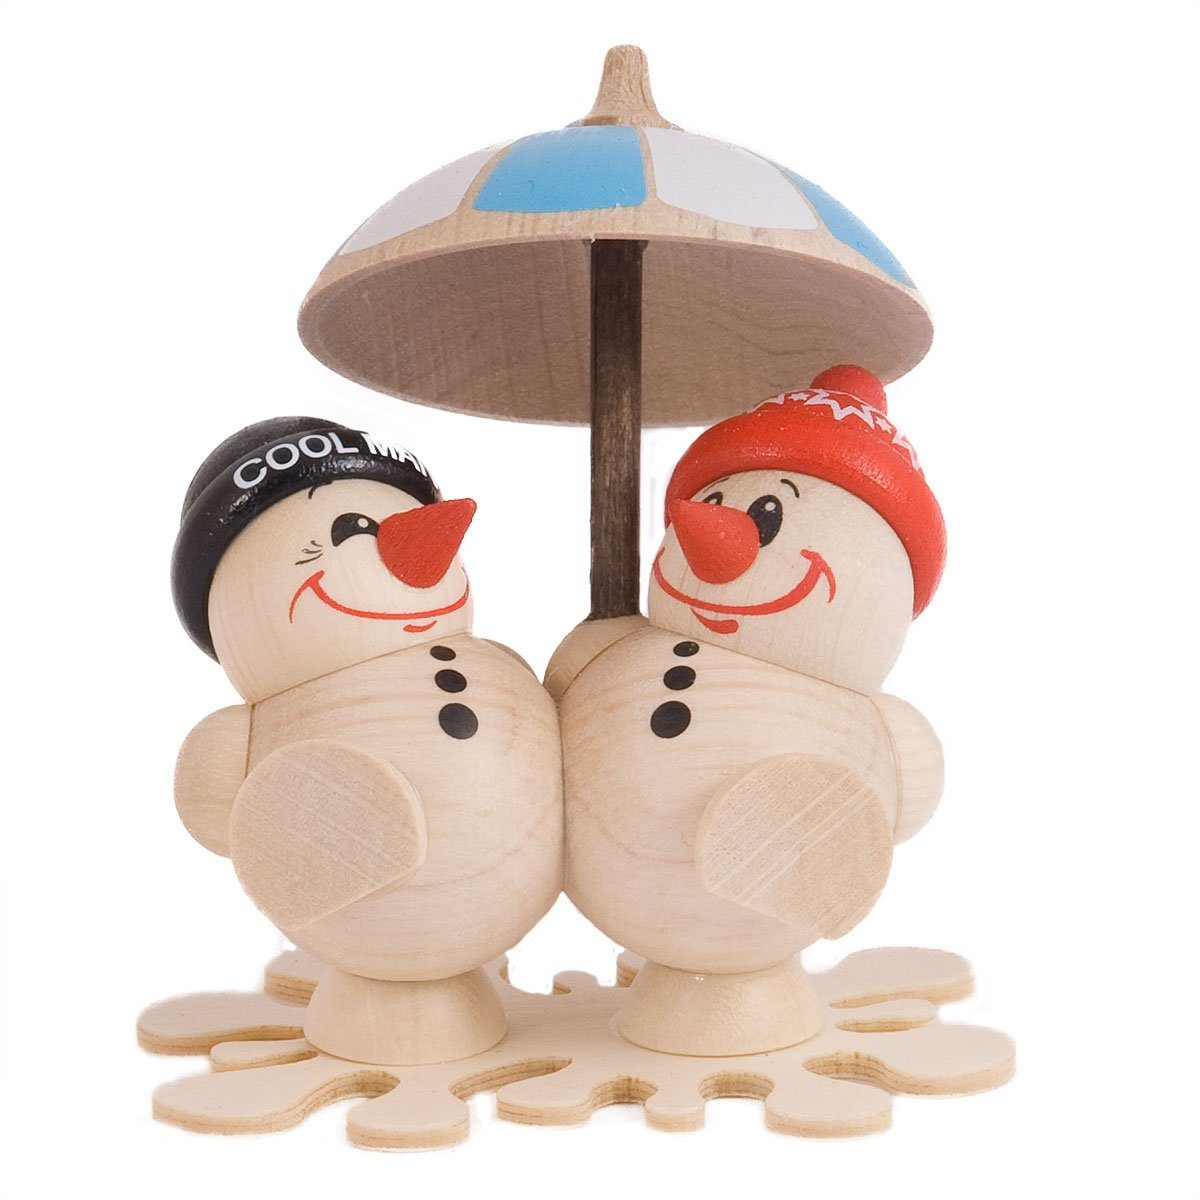 Pfiffiges aus dem Erzgebirge Weihnachtsfigur Cool Man Fritz & Freddy Eisregen, Echt Erzgebirge - Holzkunst mit Herz